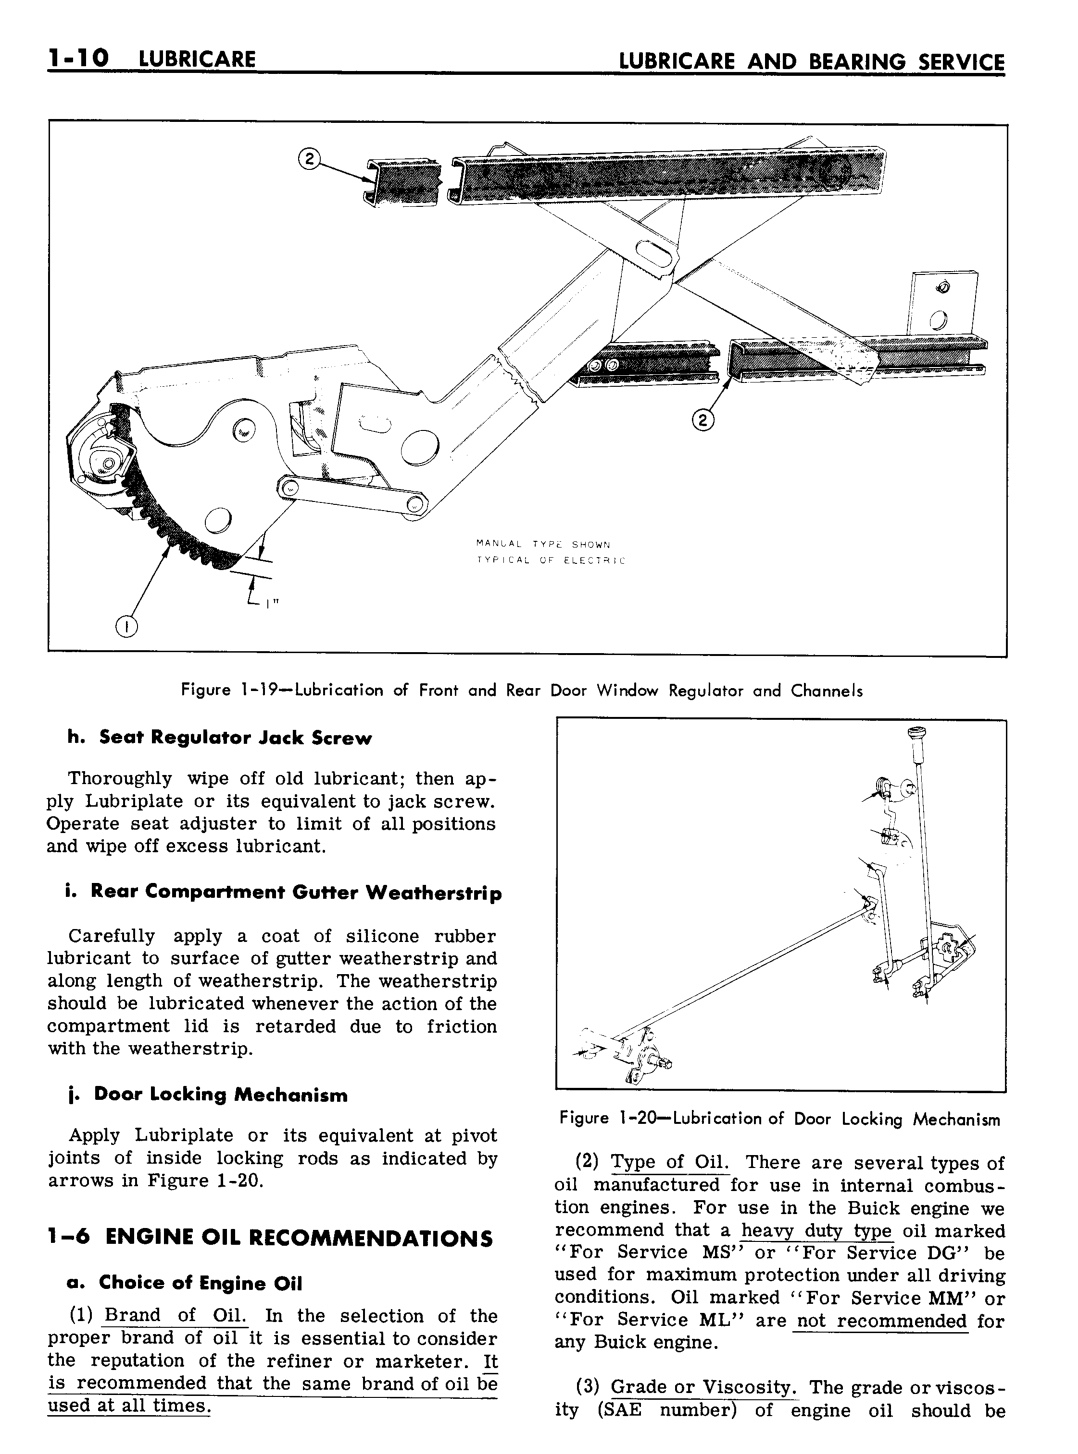 n_02 1961 Buick Shop Manual - Lubricare-010-010.jpg